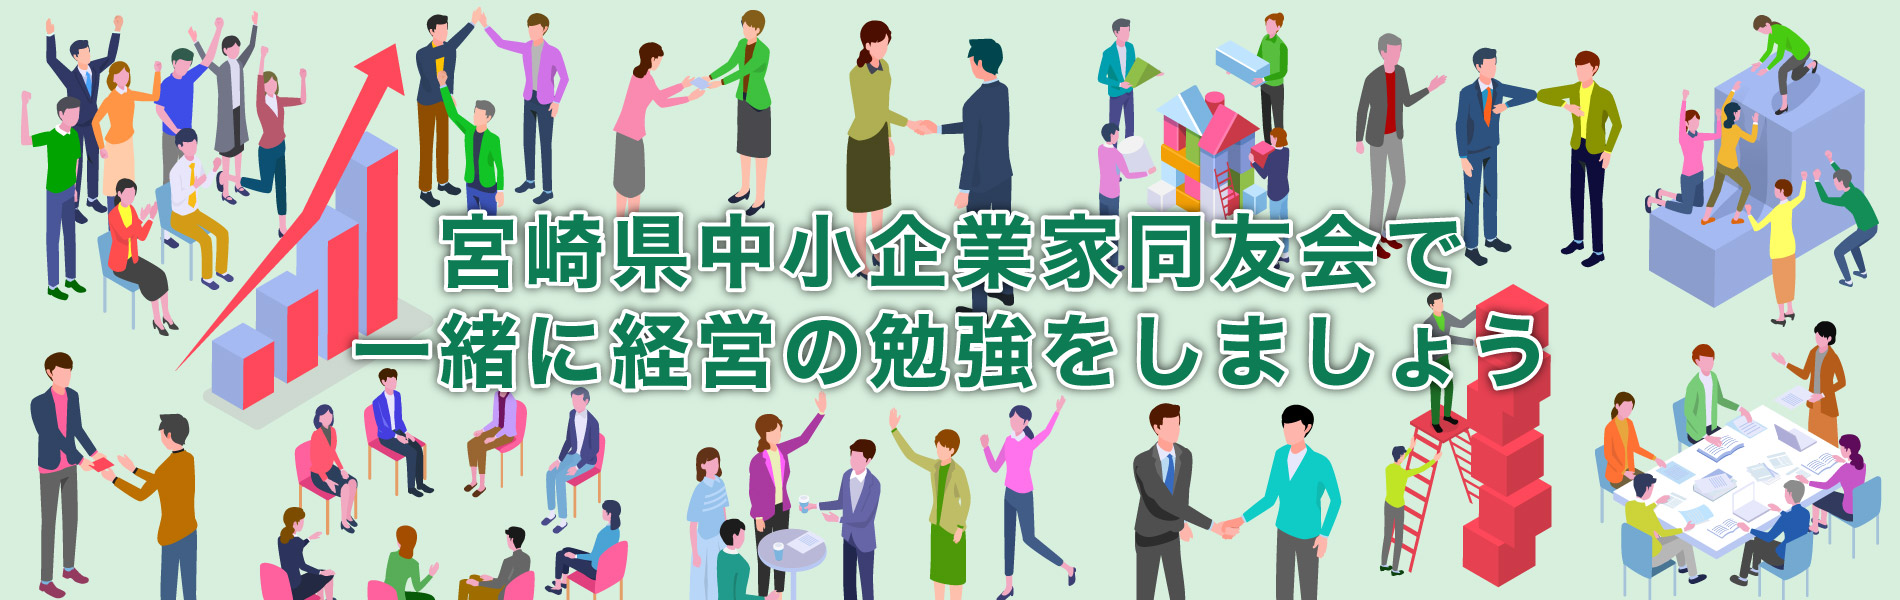 宮崎県中小企業家同友会で 一緒に経営の勉強をしましょう